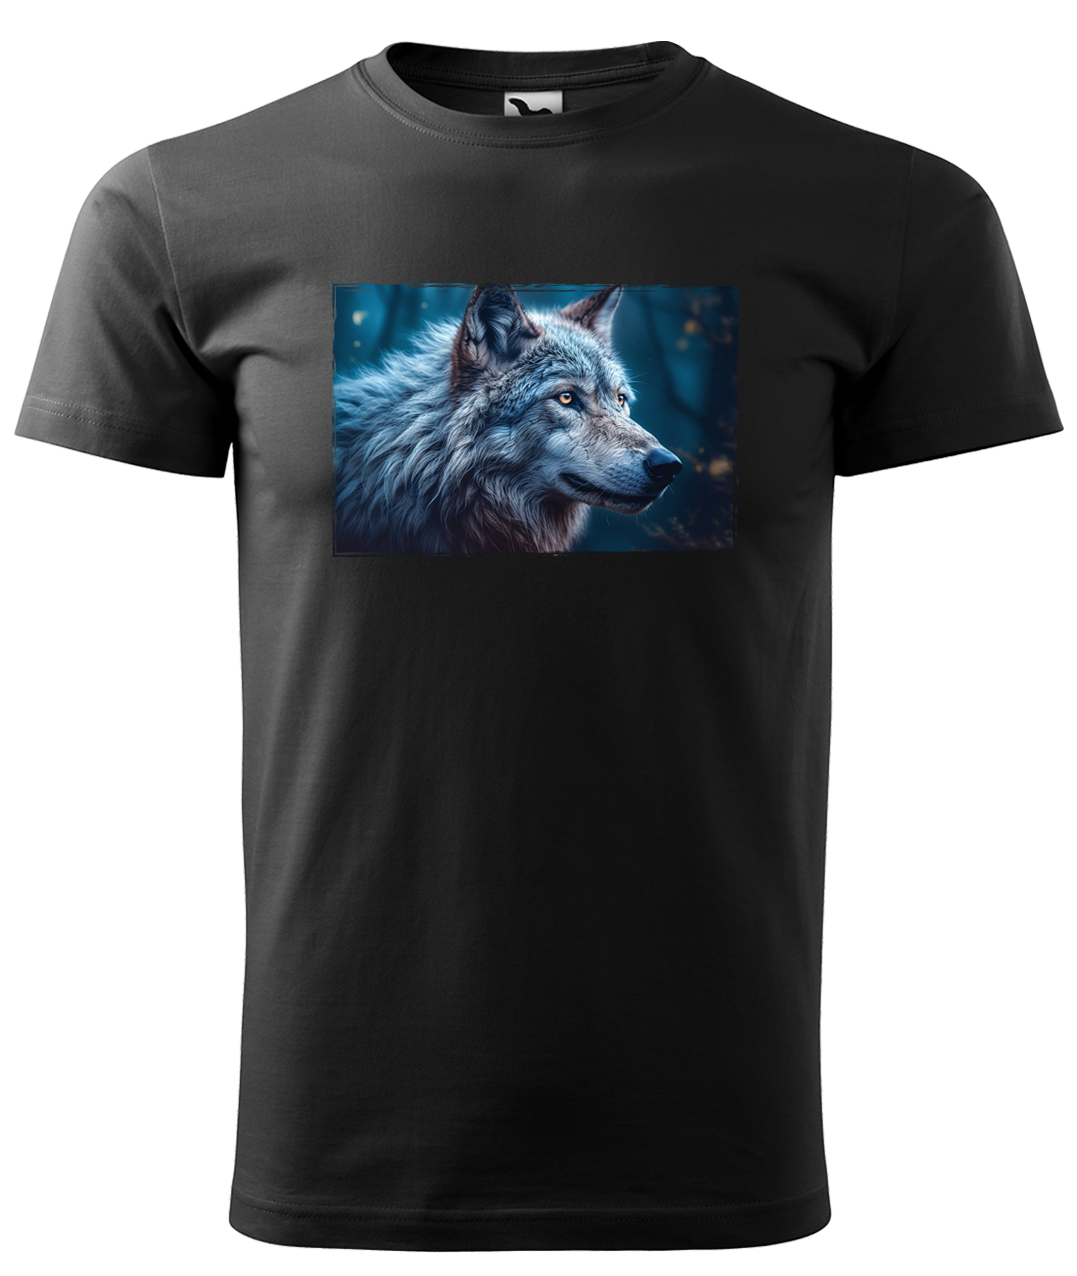 Dětské tričko s vlkem - Modrý vlk Velikost: 4 roky / 110 cm, Barva: Černá (01)